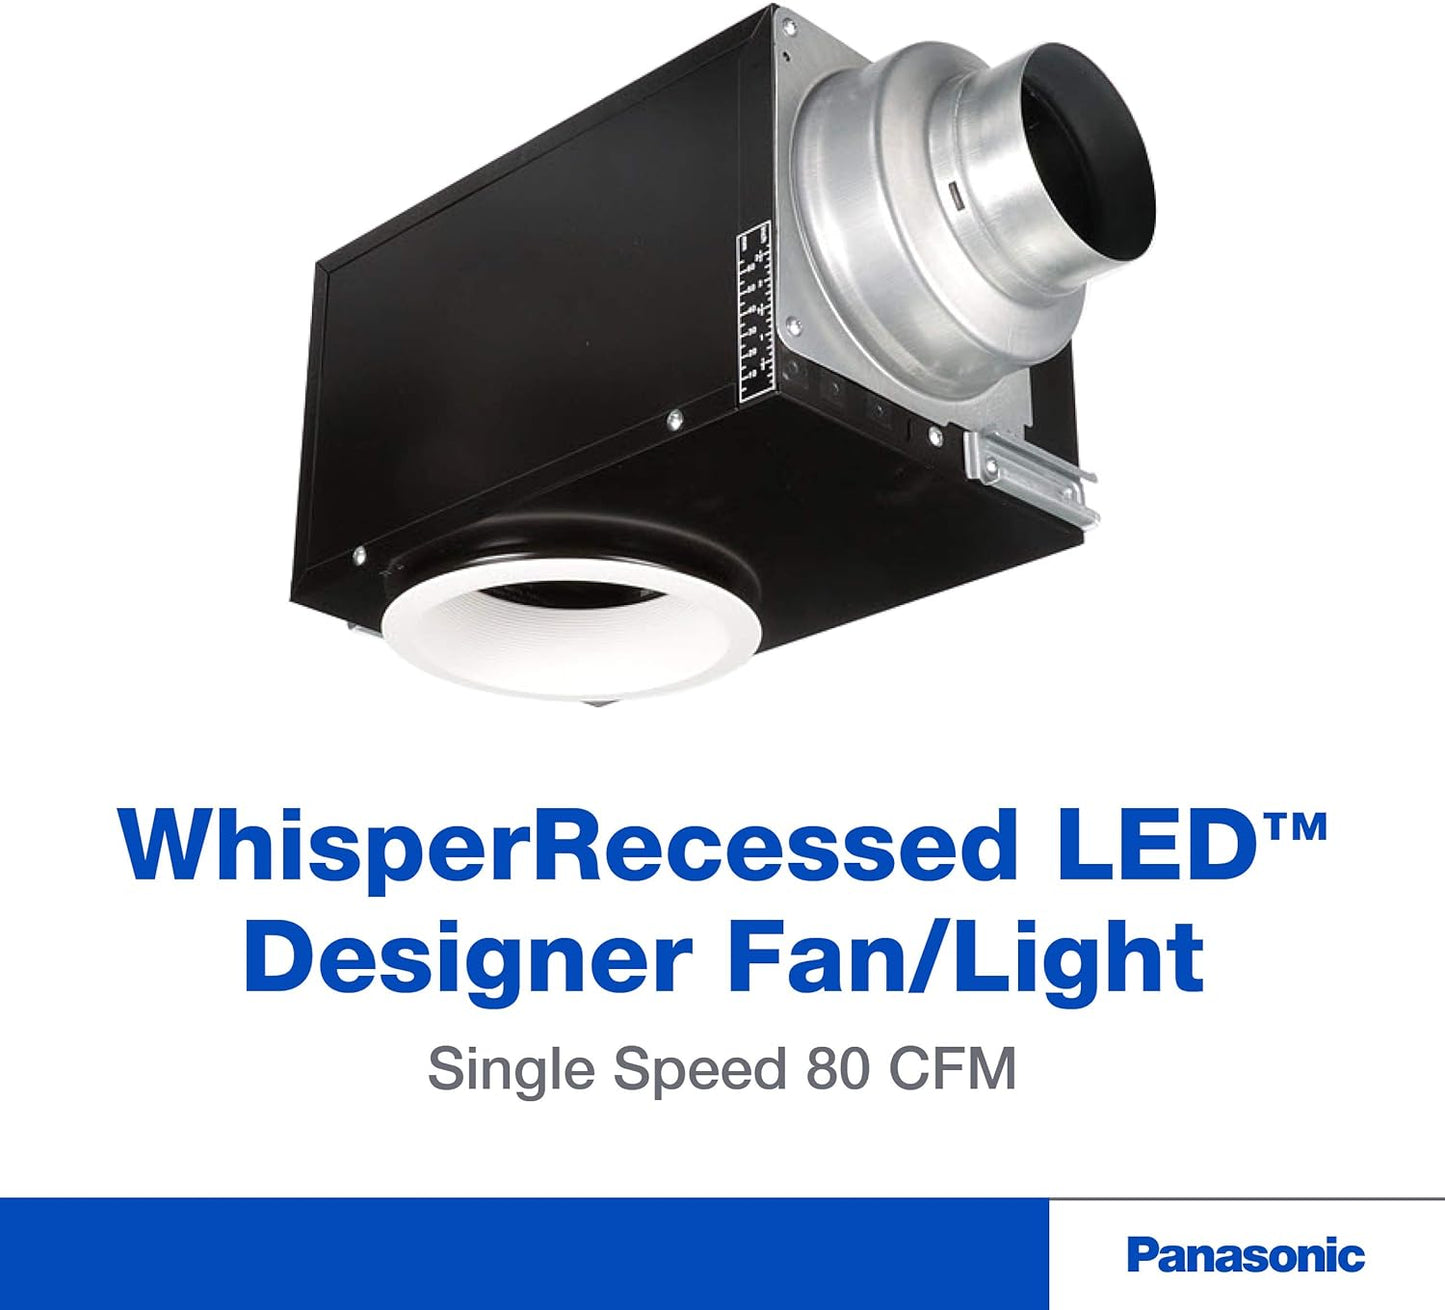 Panasonic FV-08VRE2 Whisper Recessed 80 CFM Fan with LED Light